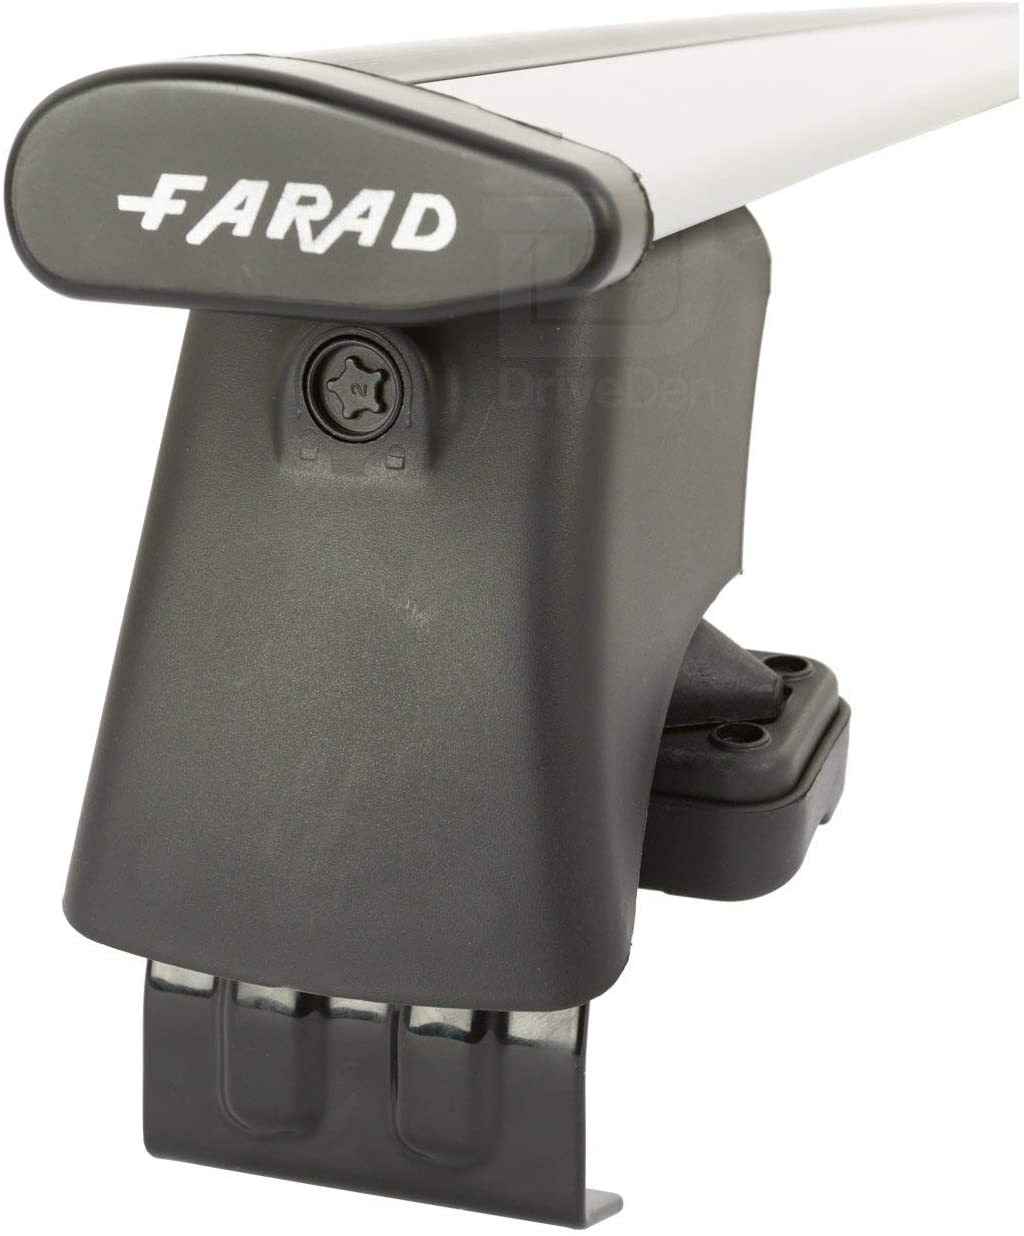 FARAD-Kit H2 per barre portatutto - Toyota Auris 2007-2012 (senza corrimano)